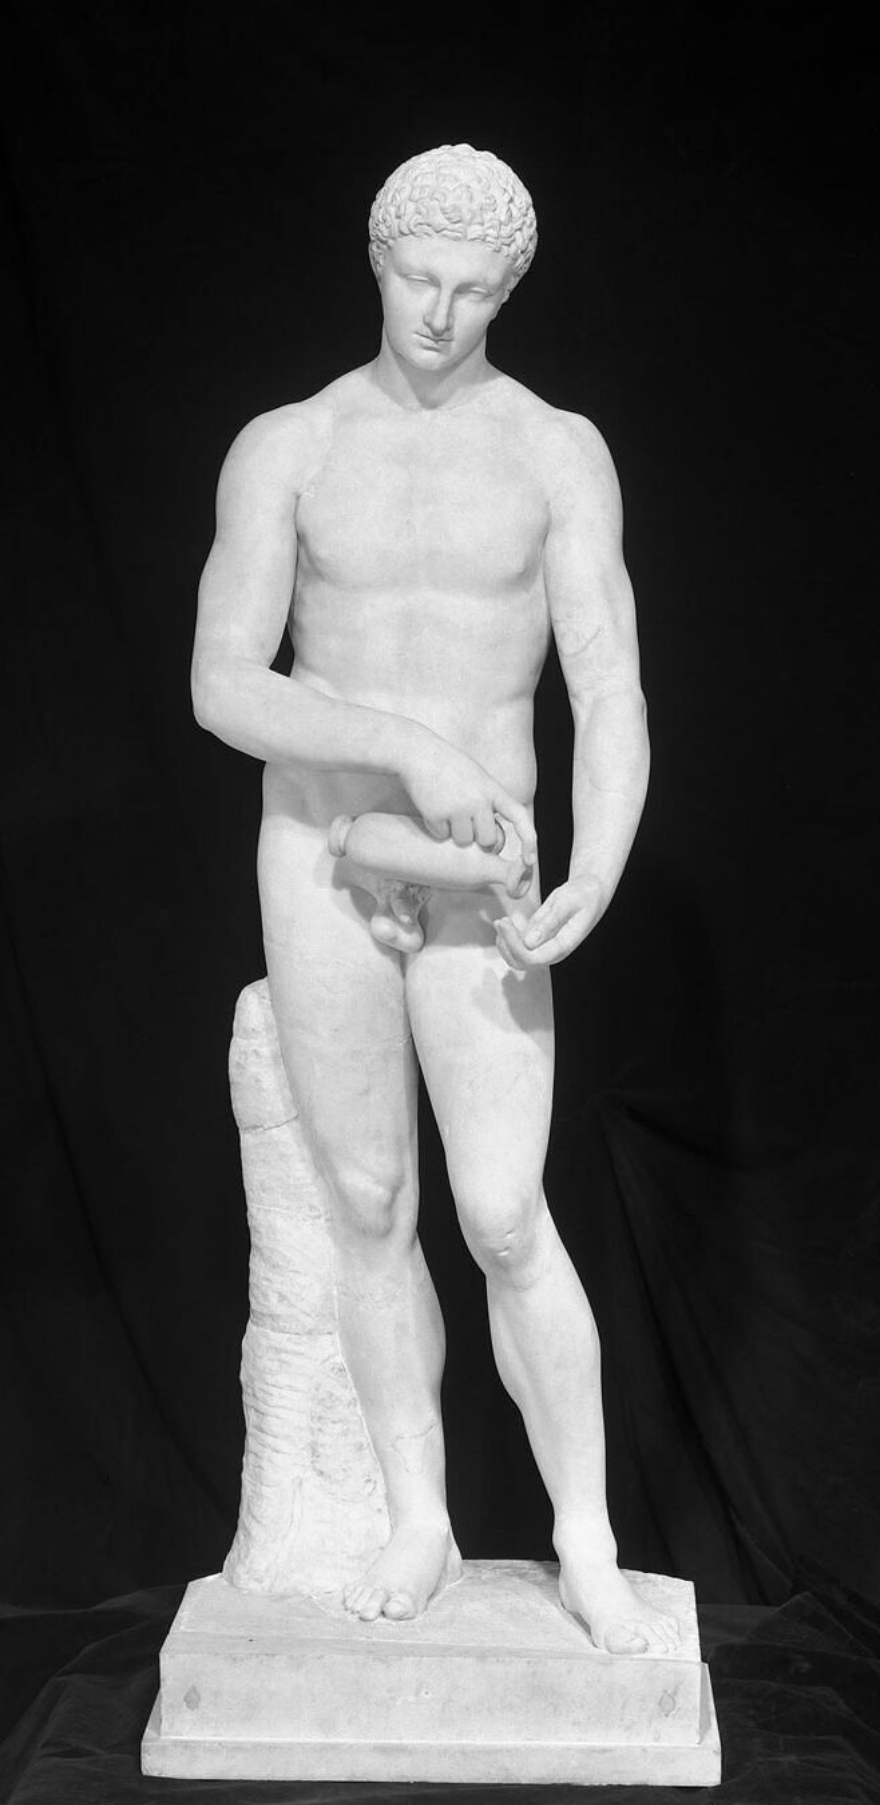 Άγαλμα αθλητή που ετοιμάζεται για αγώνα από το Μουσείο του Λούβρου στην έκθεση "Αρχαίοι Έλληνες: επιστήμη και σοφία" στο Λονδίνο